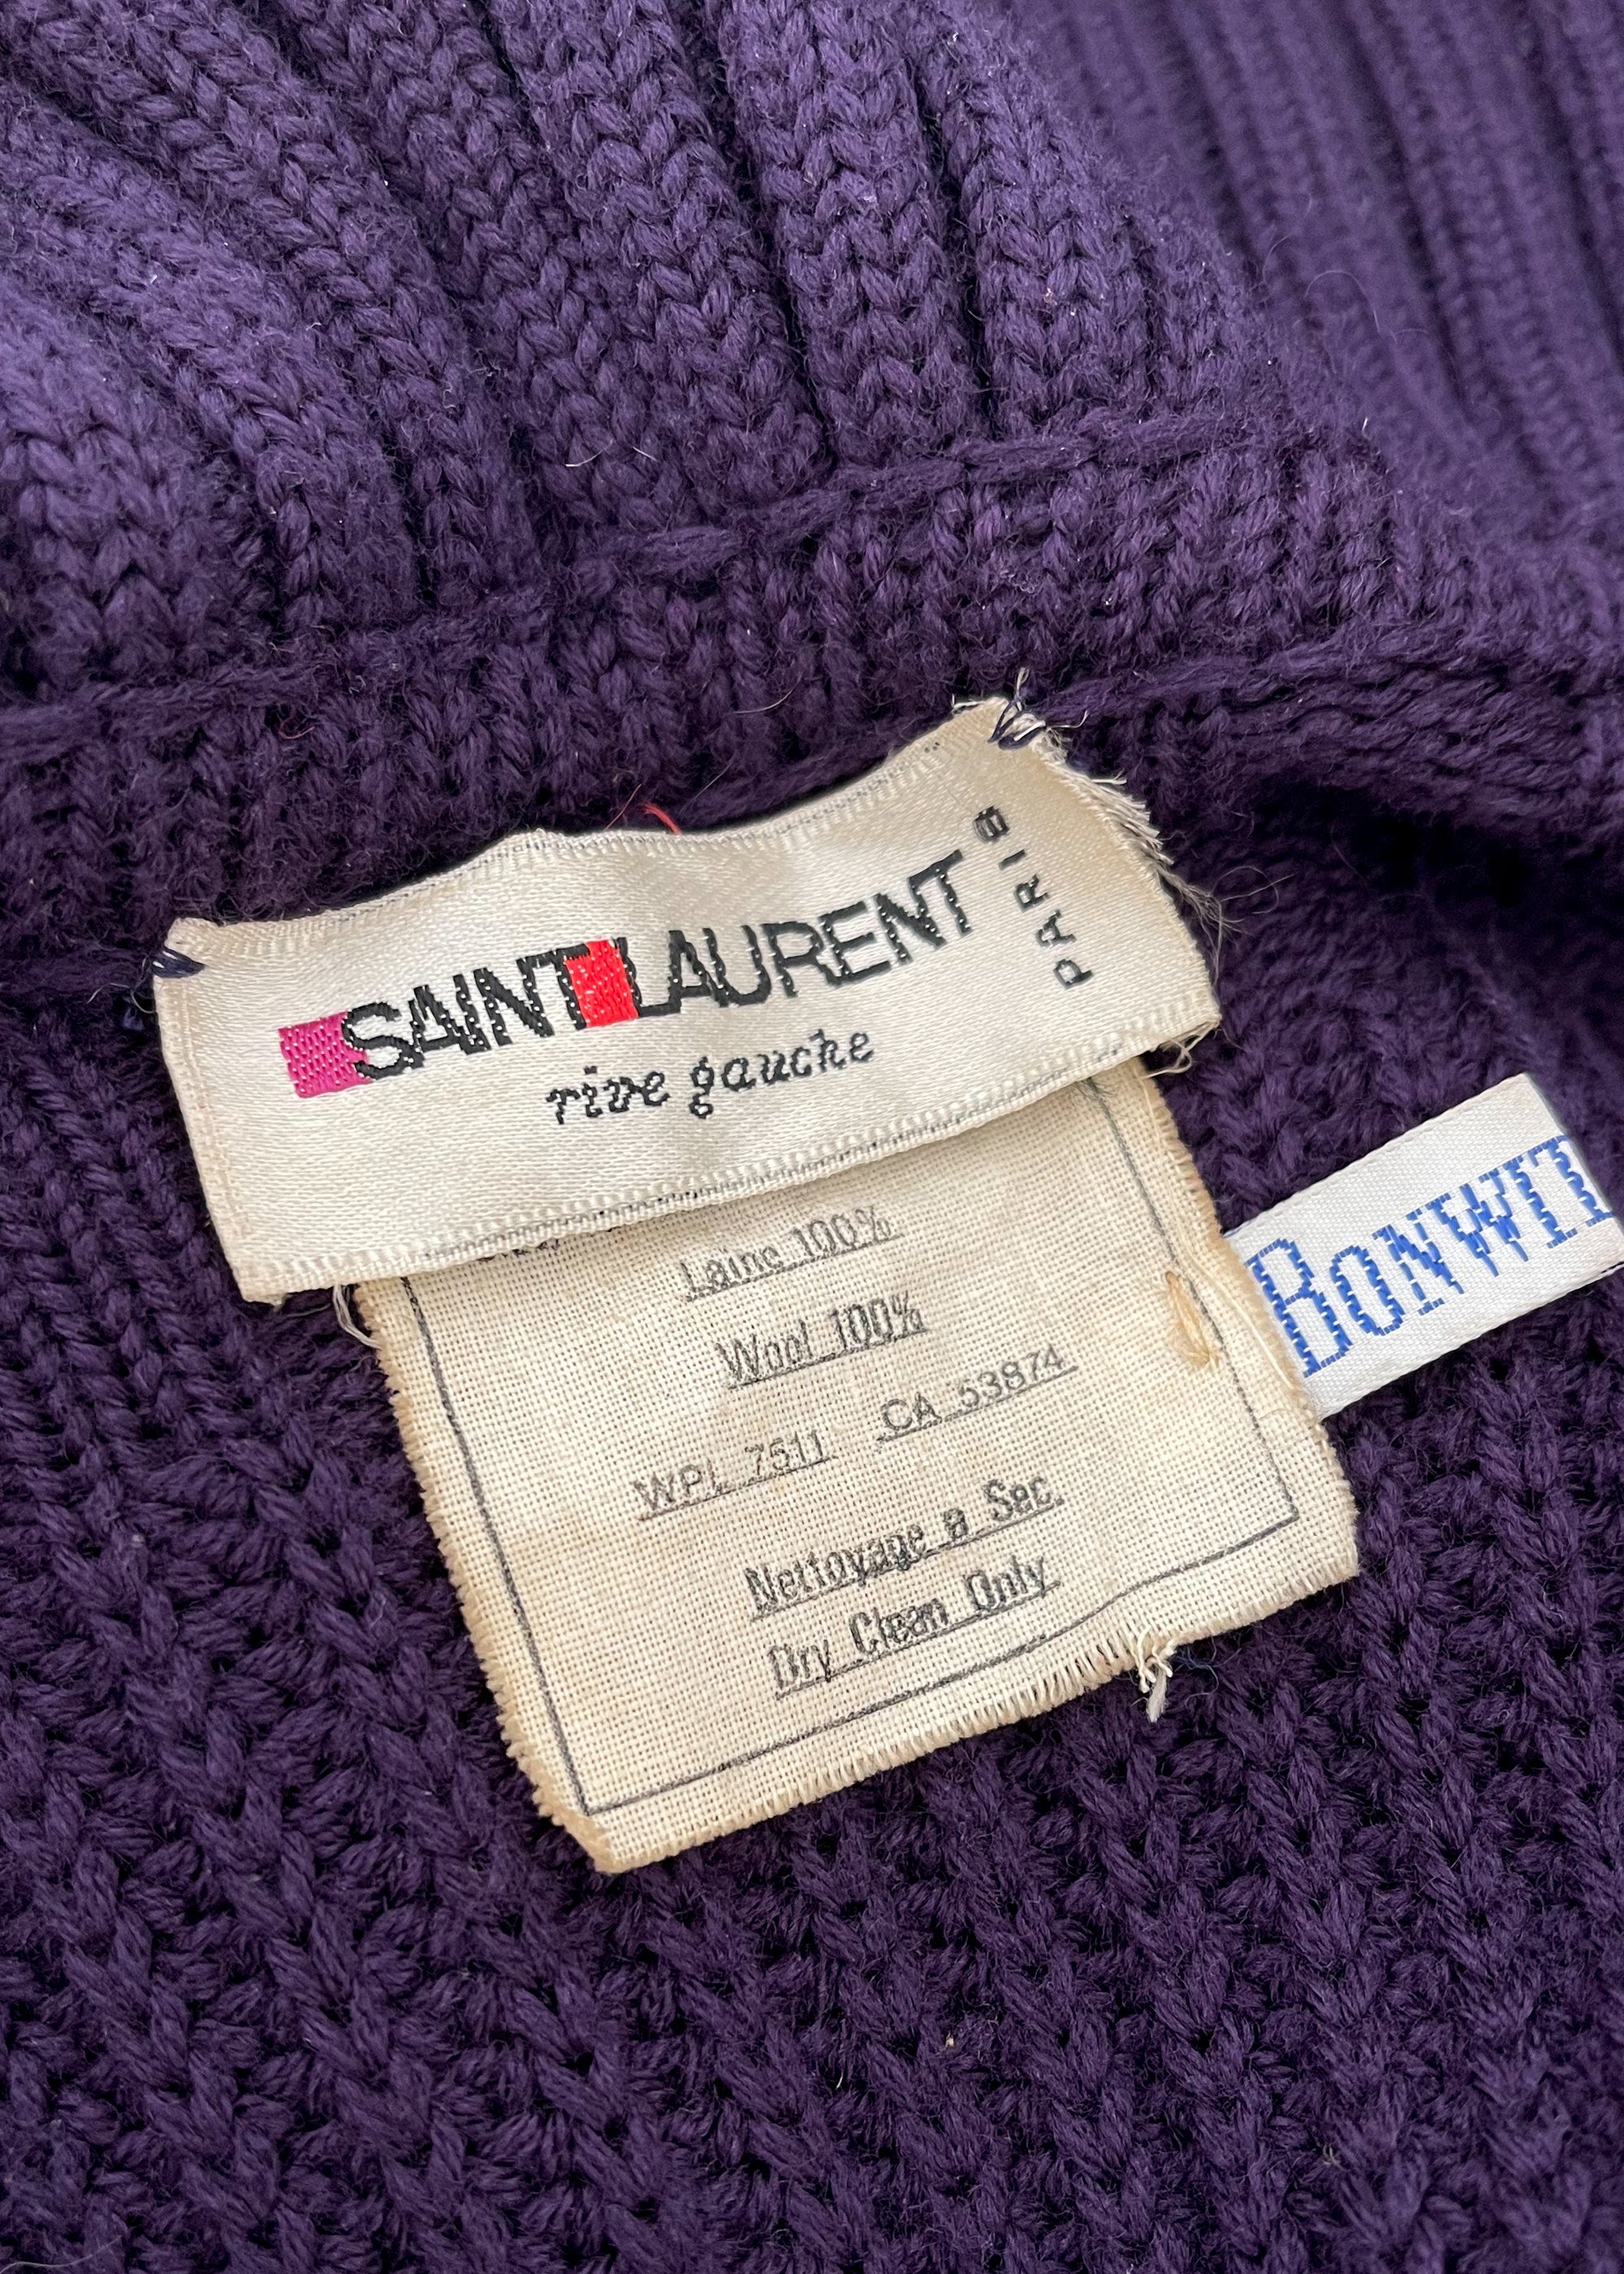 YSL Rive Gauche labels.  Vintage labels, Yves saint laurent paris